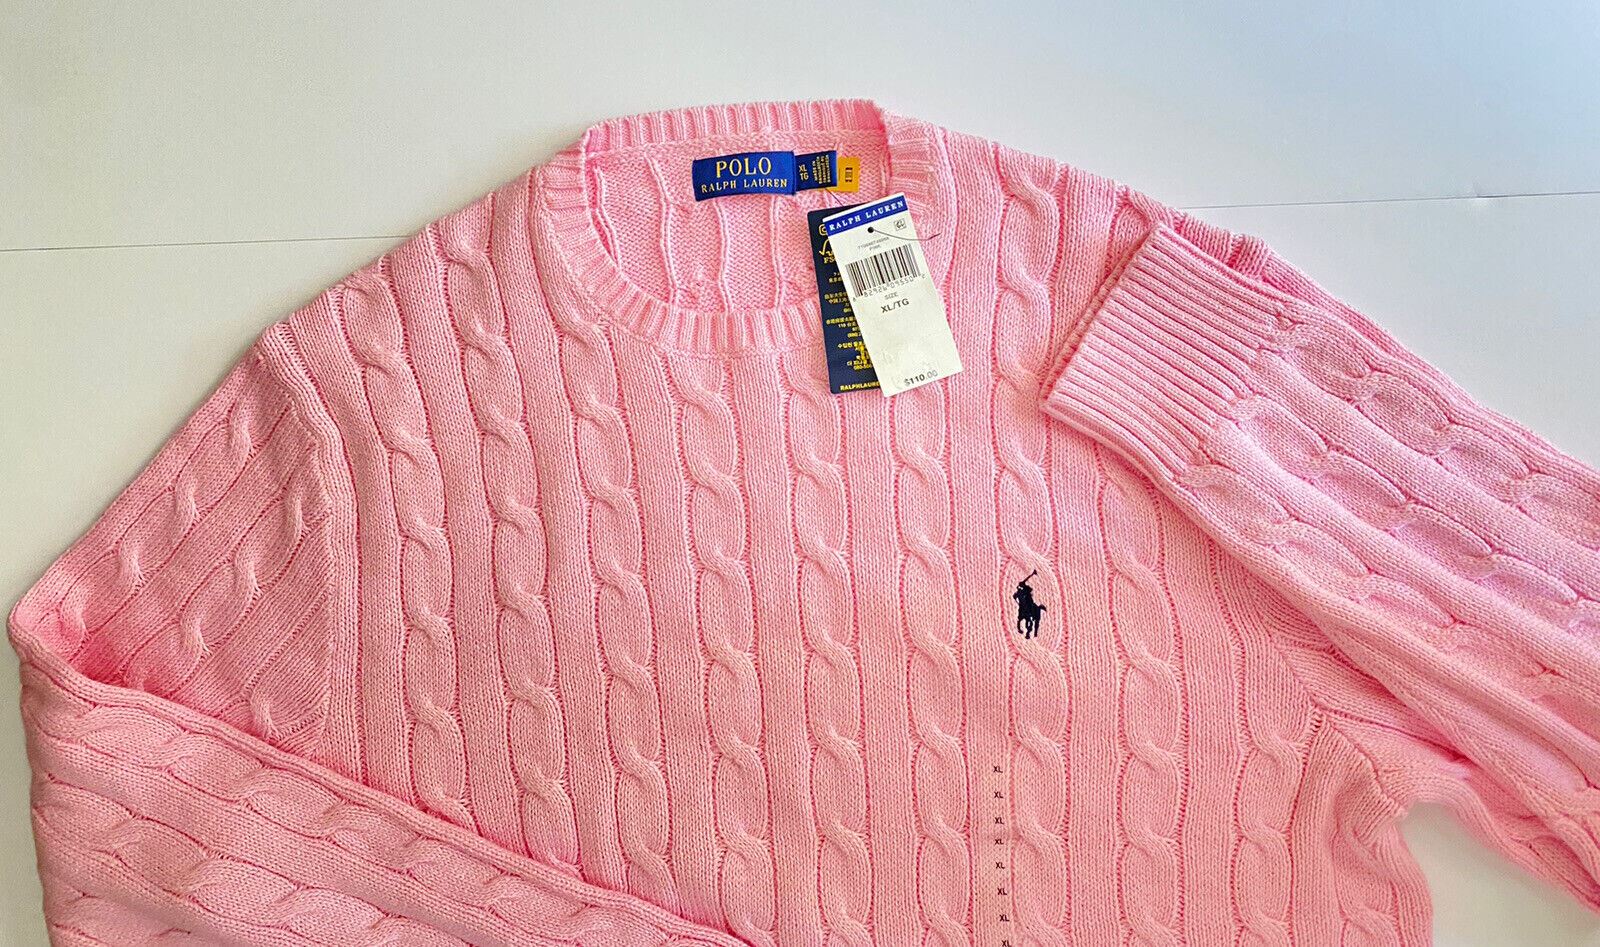 NWT $110 Polo Ralph Lauren Men's Knit Sweater Pink XL/TG